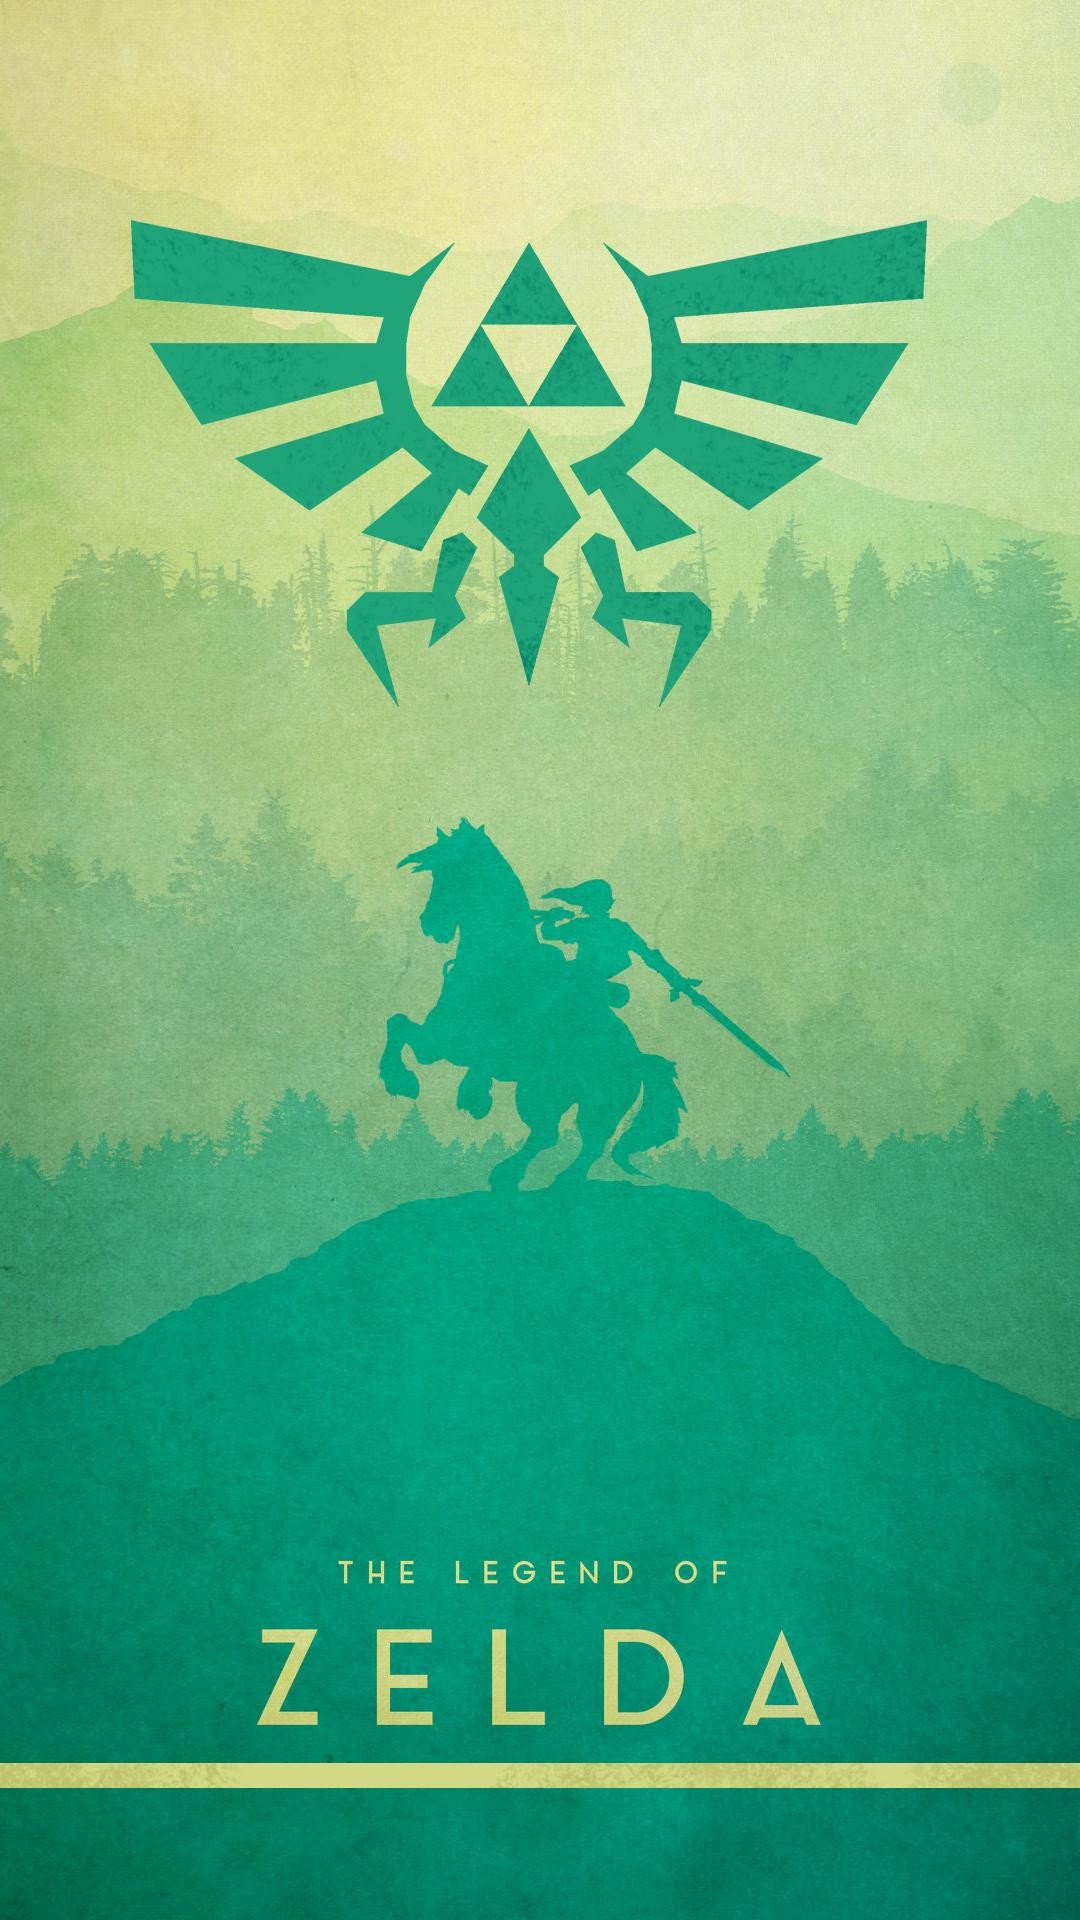 The Legend Of Zelda Phone Wallpaper 1080x1920 1080x1920